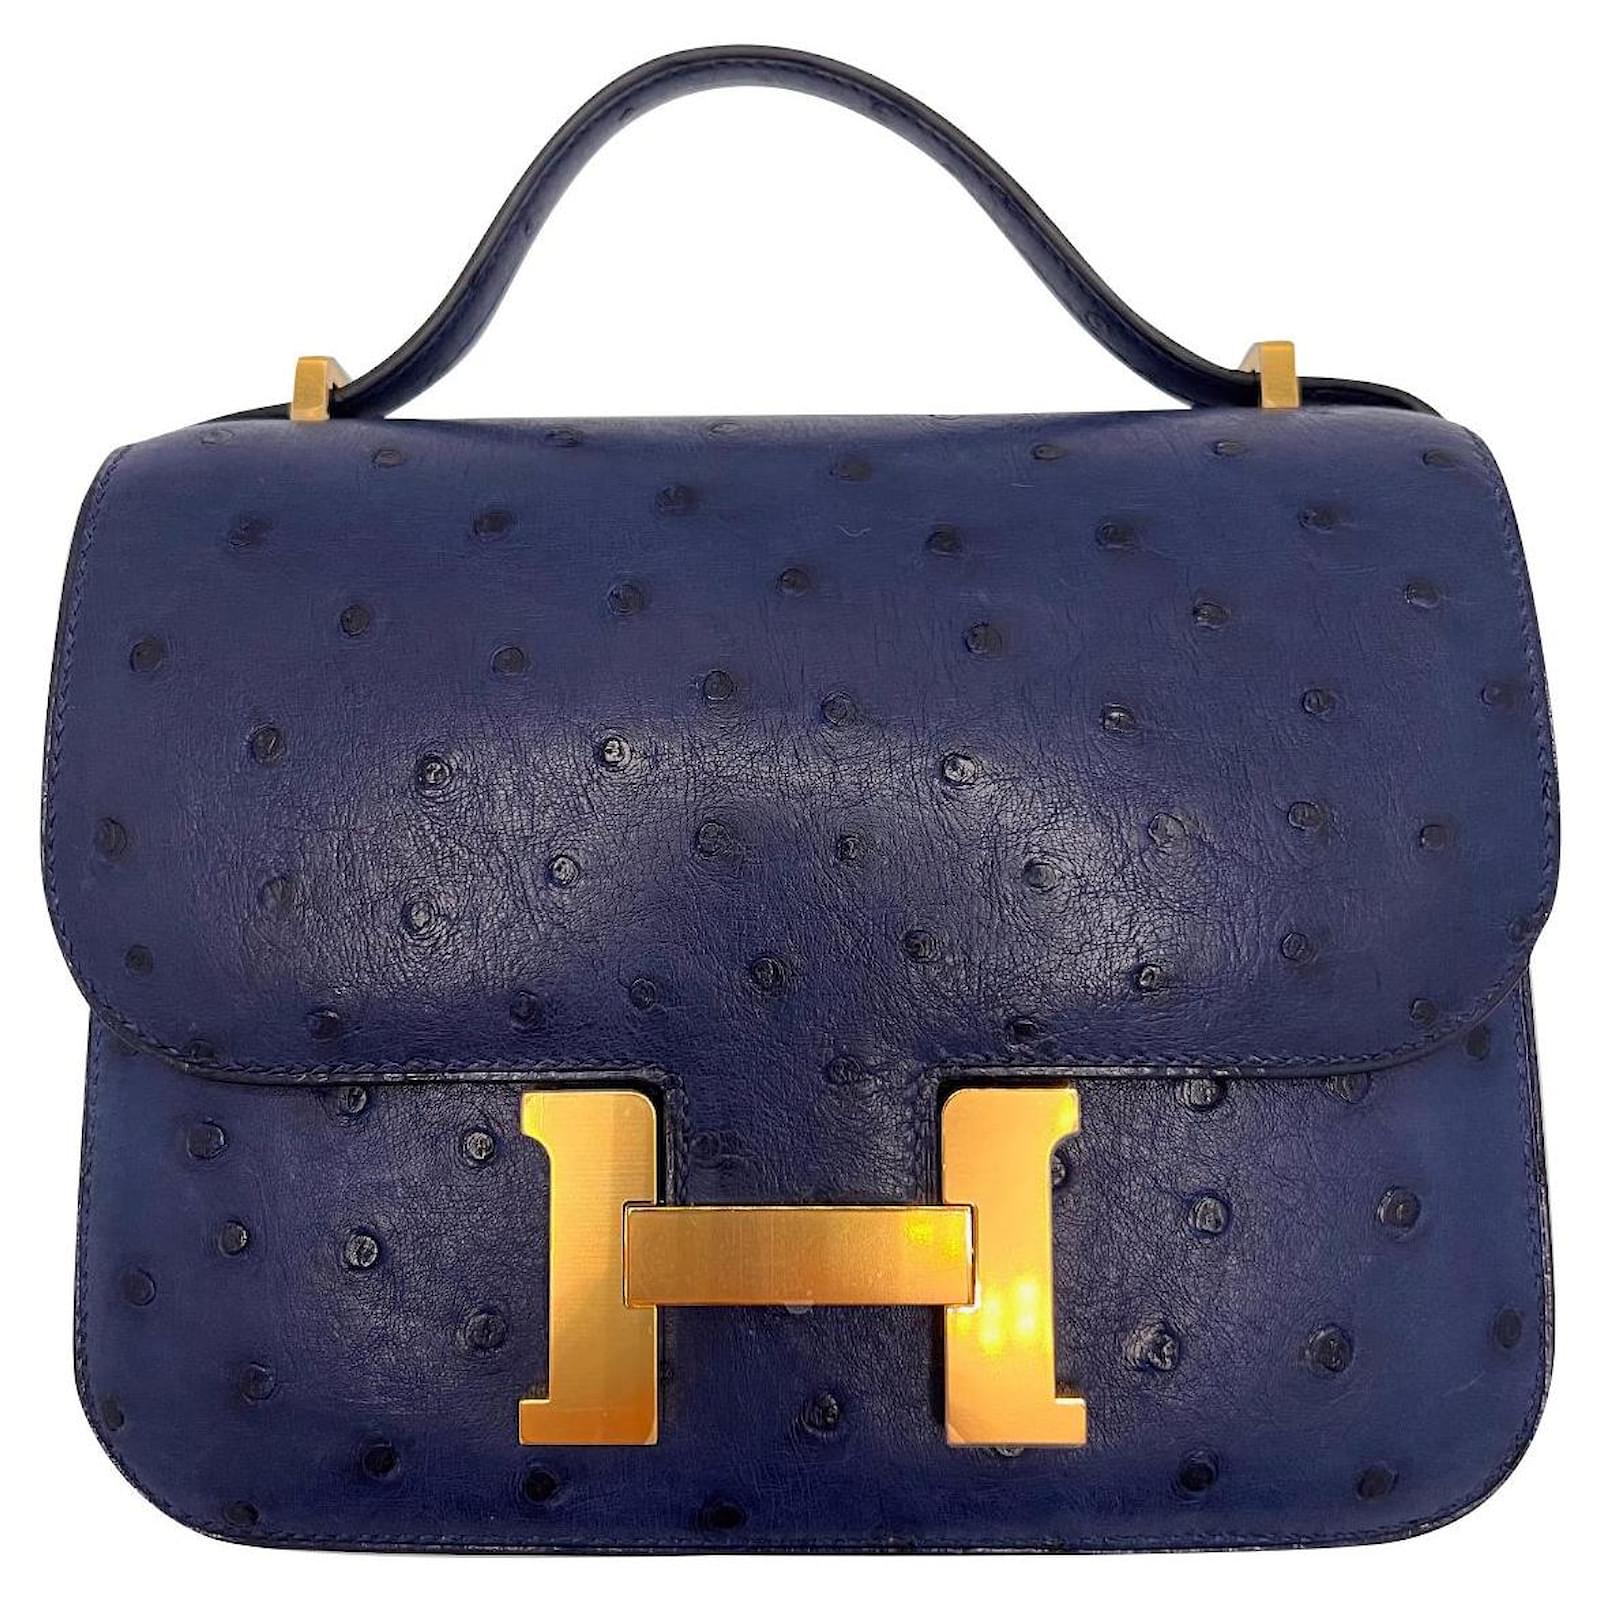 Hermès Constance Mini  Hermes constance, Hermes constance bag, Fashion